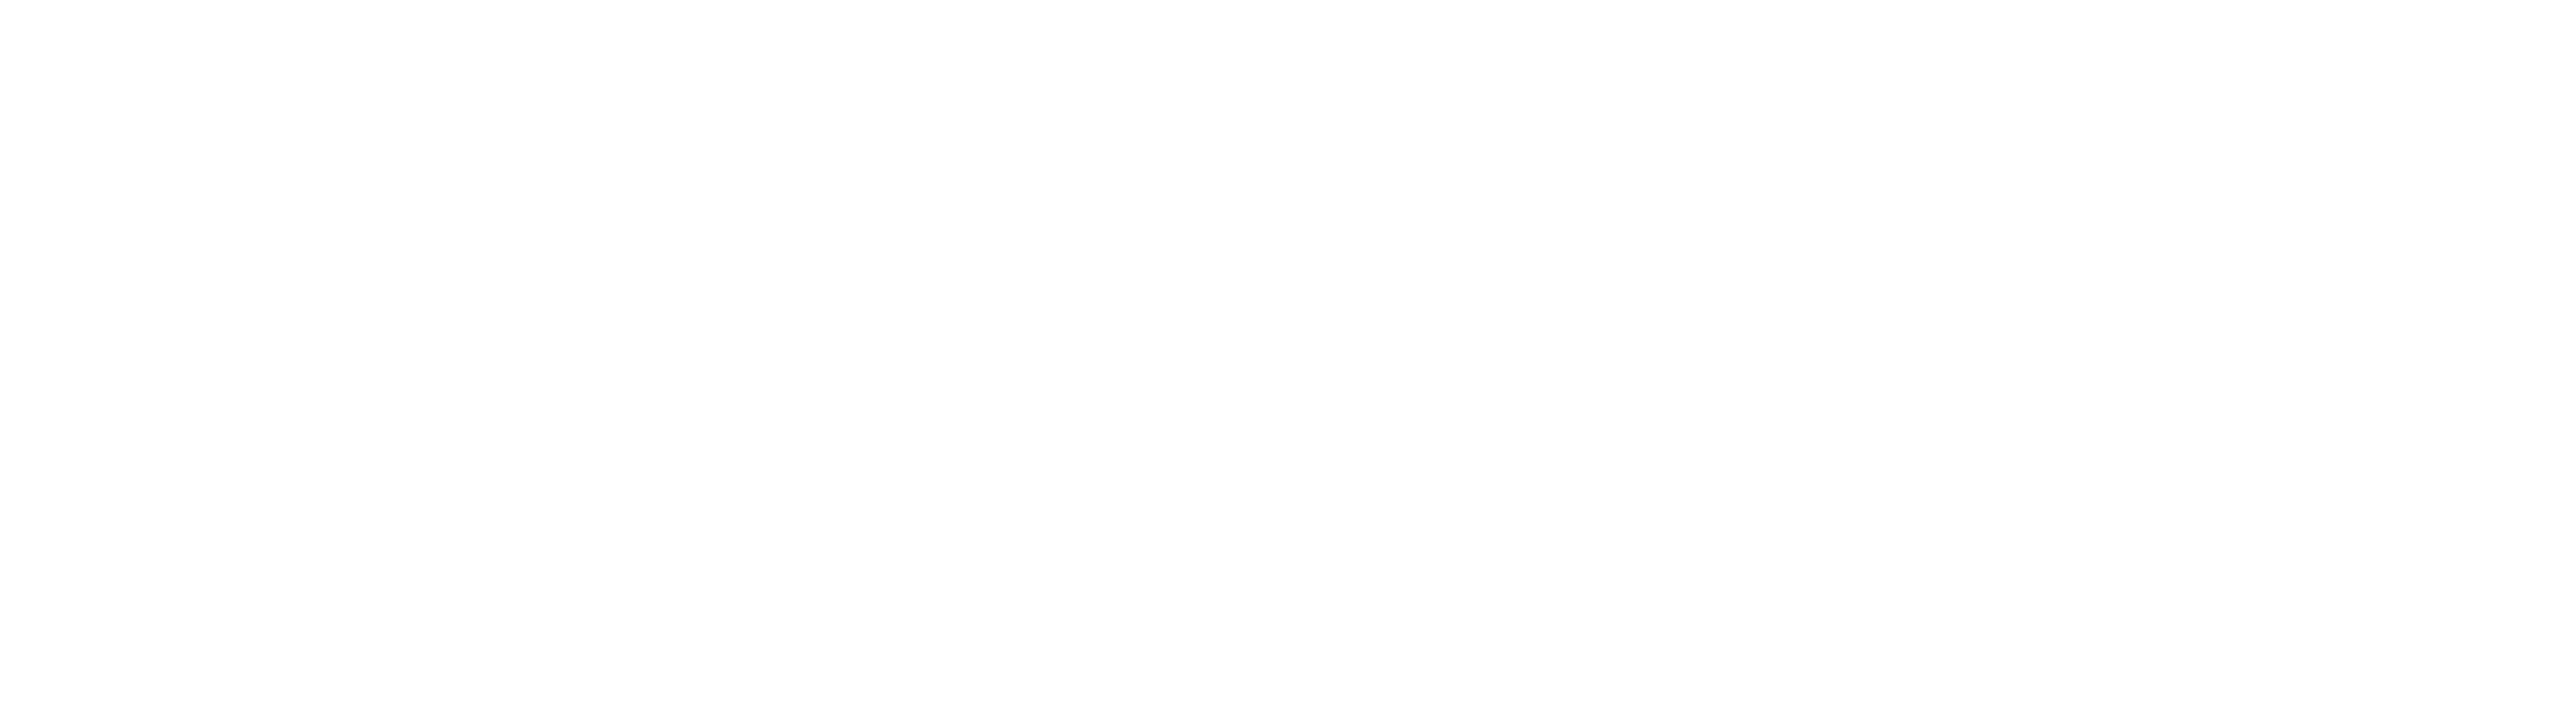 soap ui